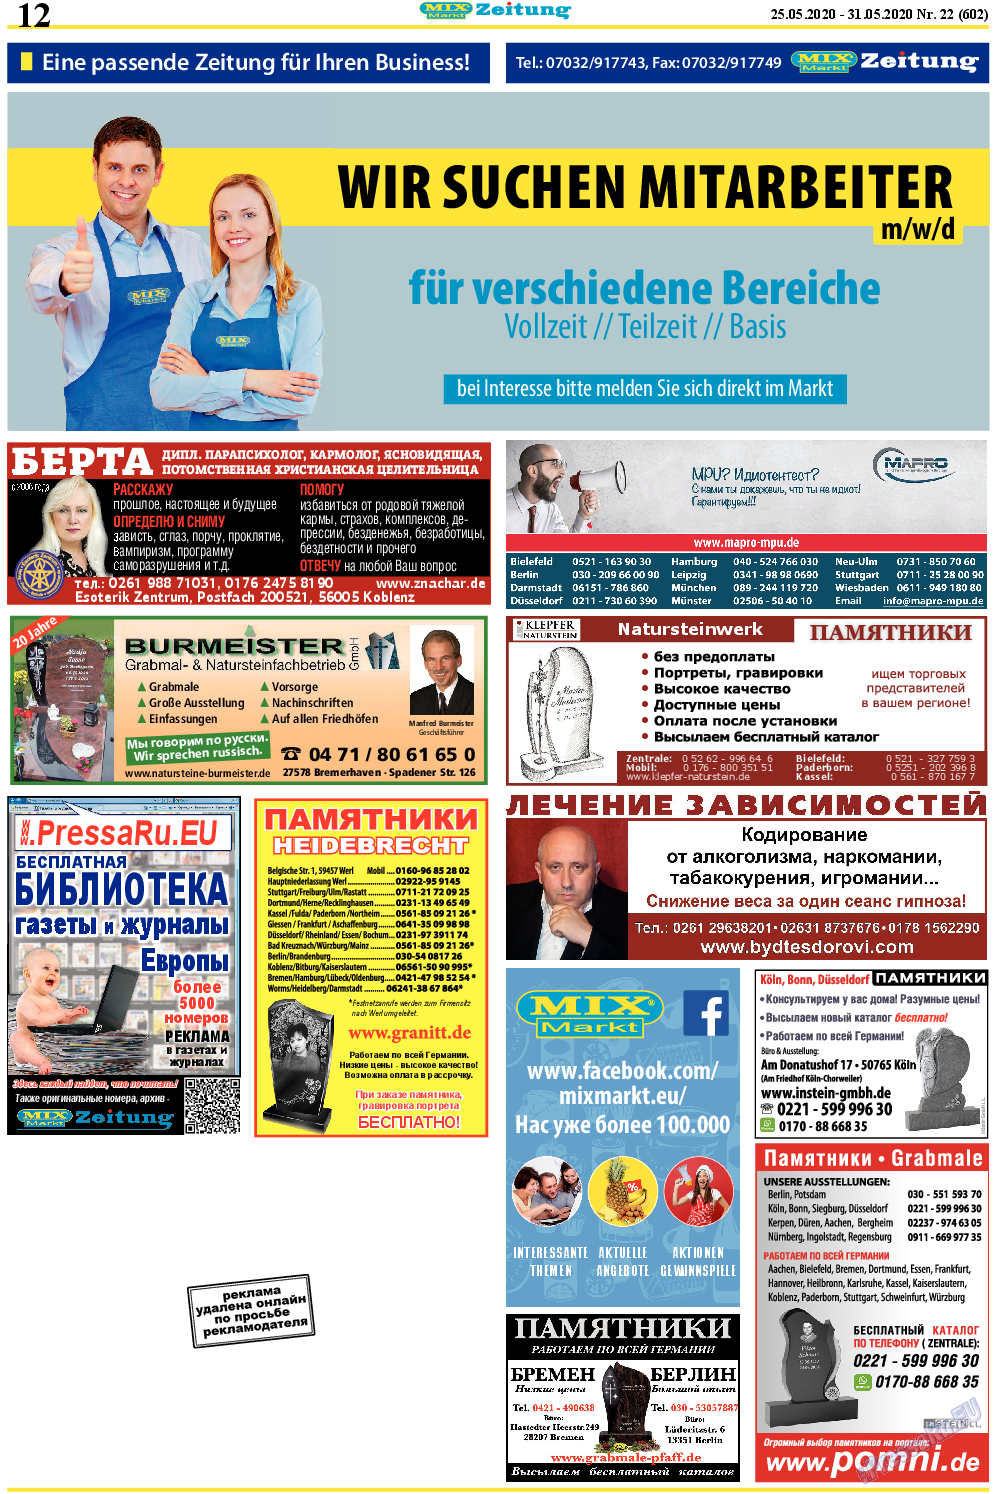 MIX-Markt Zeitung (газета). 2020 год, номер 22, стр. 12